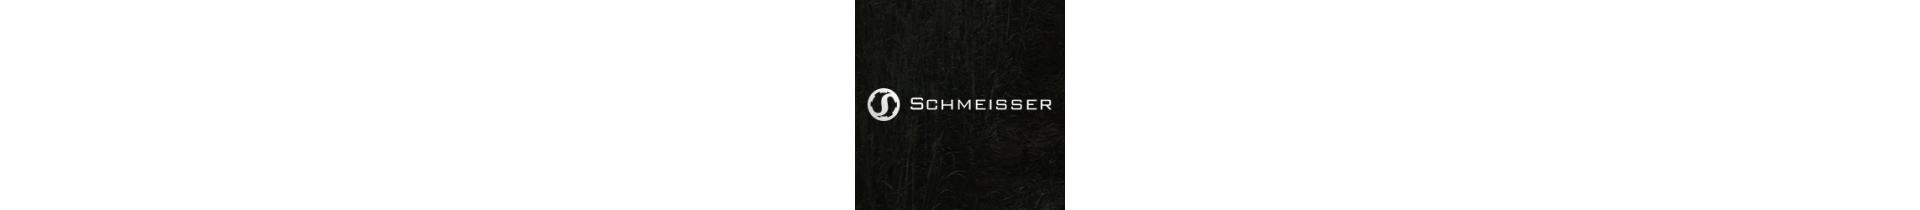 Une sélection d'armes de qualité premium Schmeisser , sur votre boutique www.tactirshop.fr